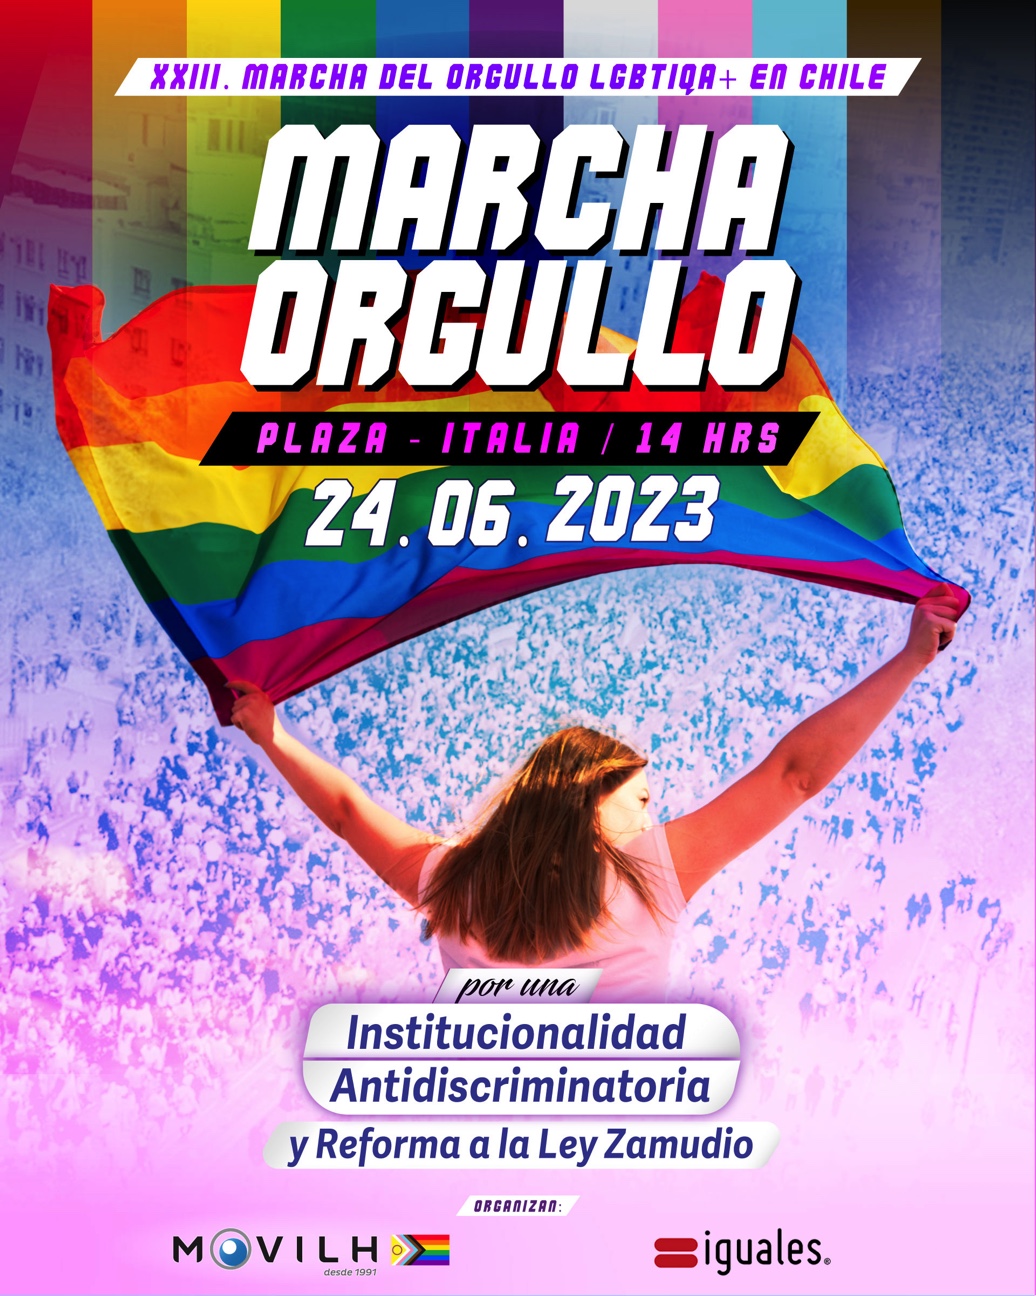 Invitan a la XXIII marcha del orgullo: por una institucionalidad antidiscriminatoria